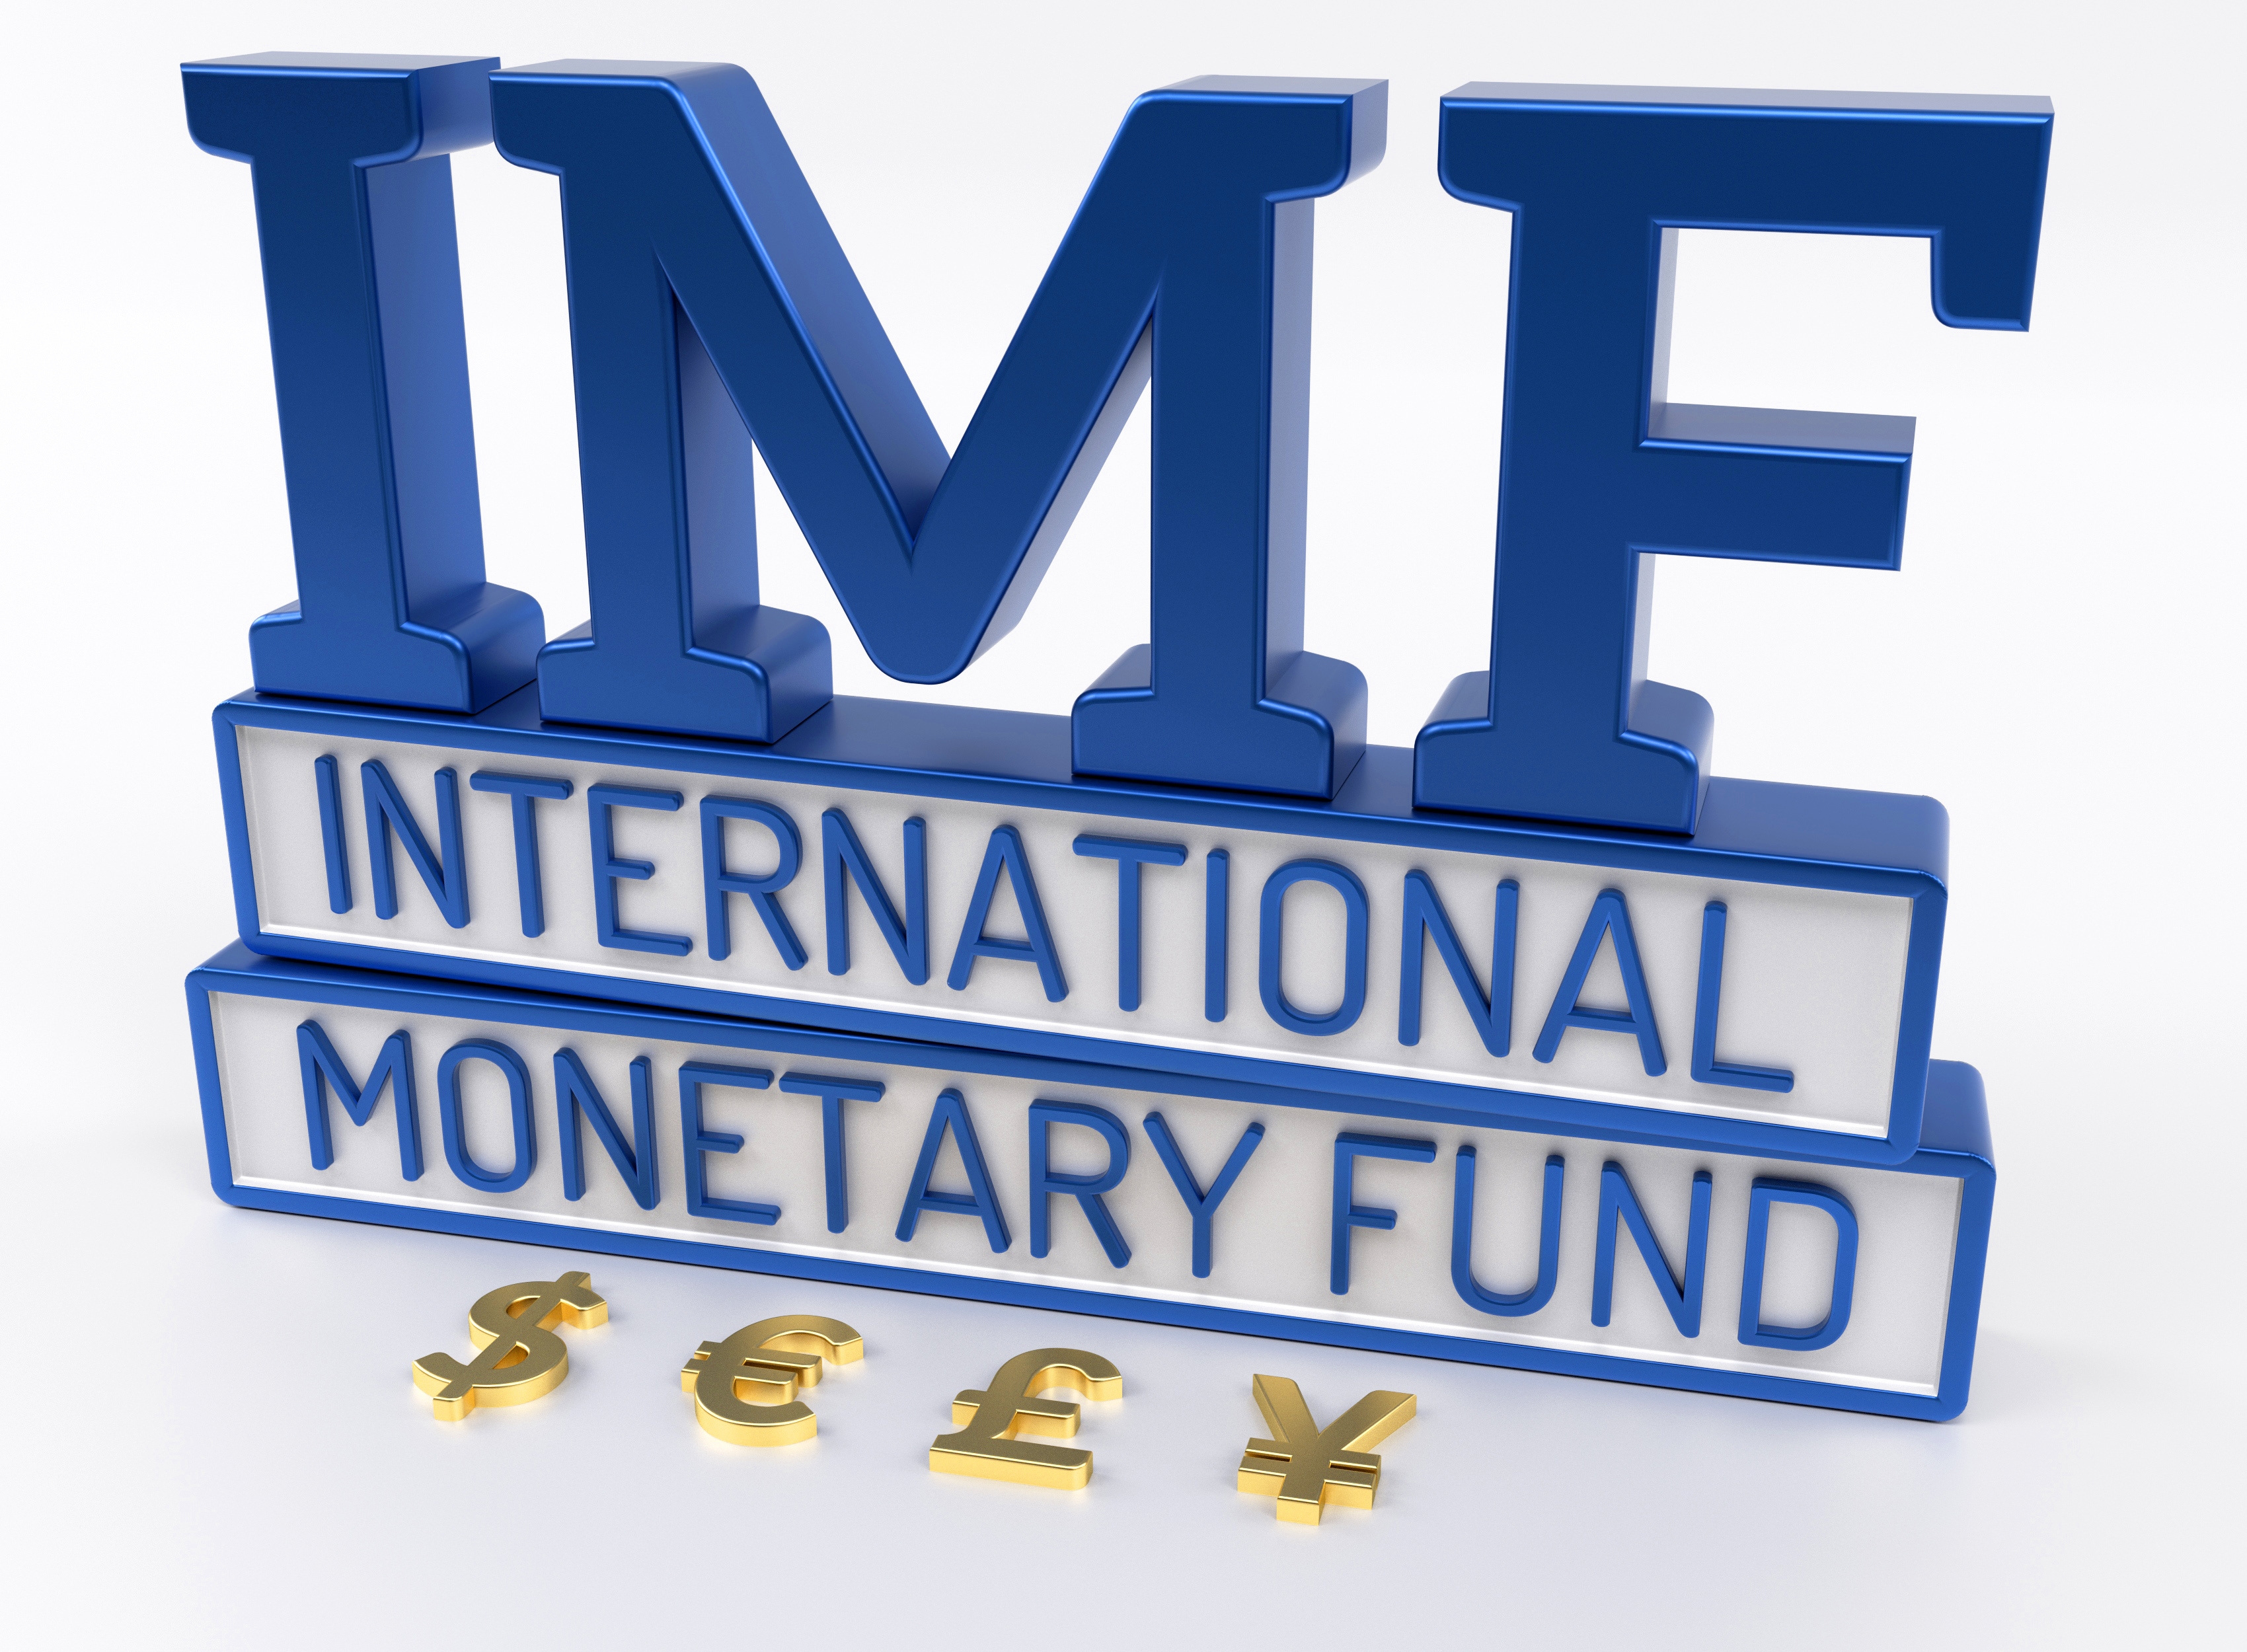 Всемирный валютный банк. МВФ логотип. International monetary Fund (IMF). Международный валютный фонд лого. Мировой валютный фонд эмблема.